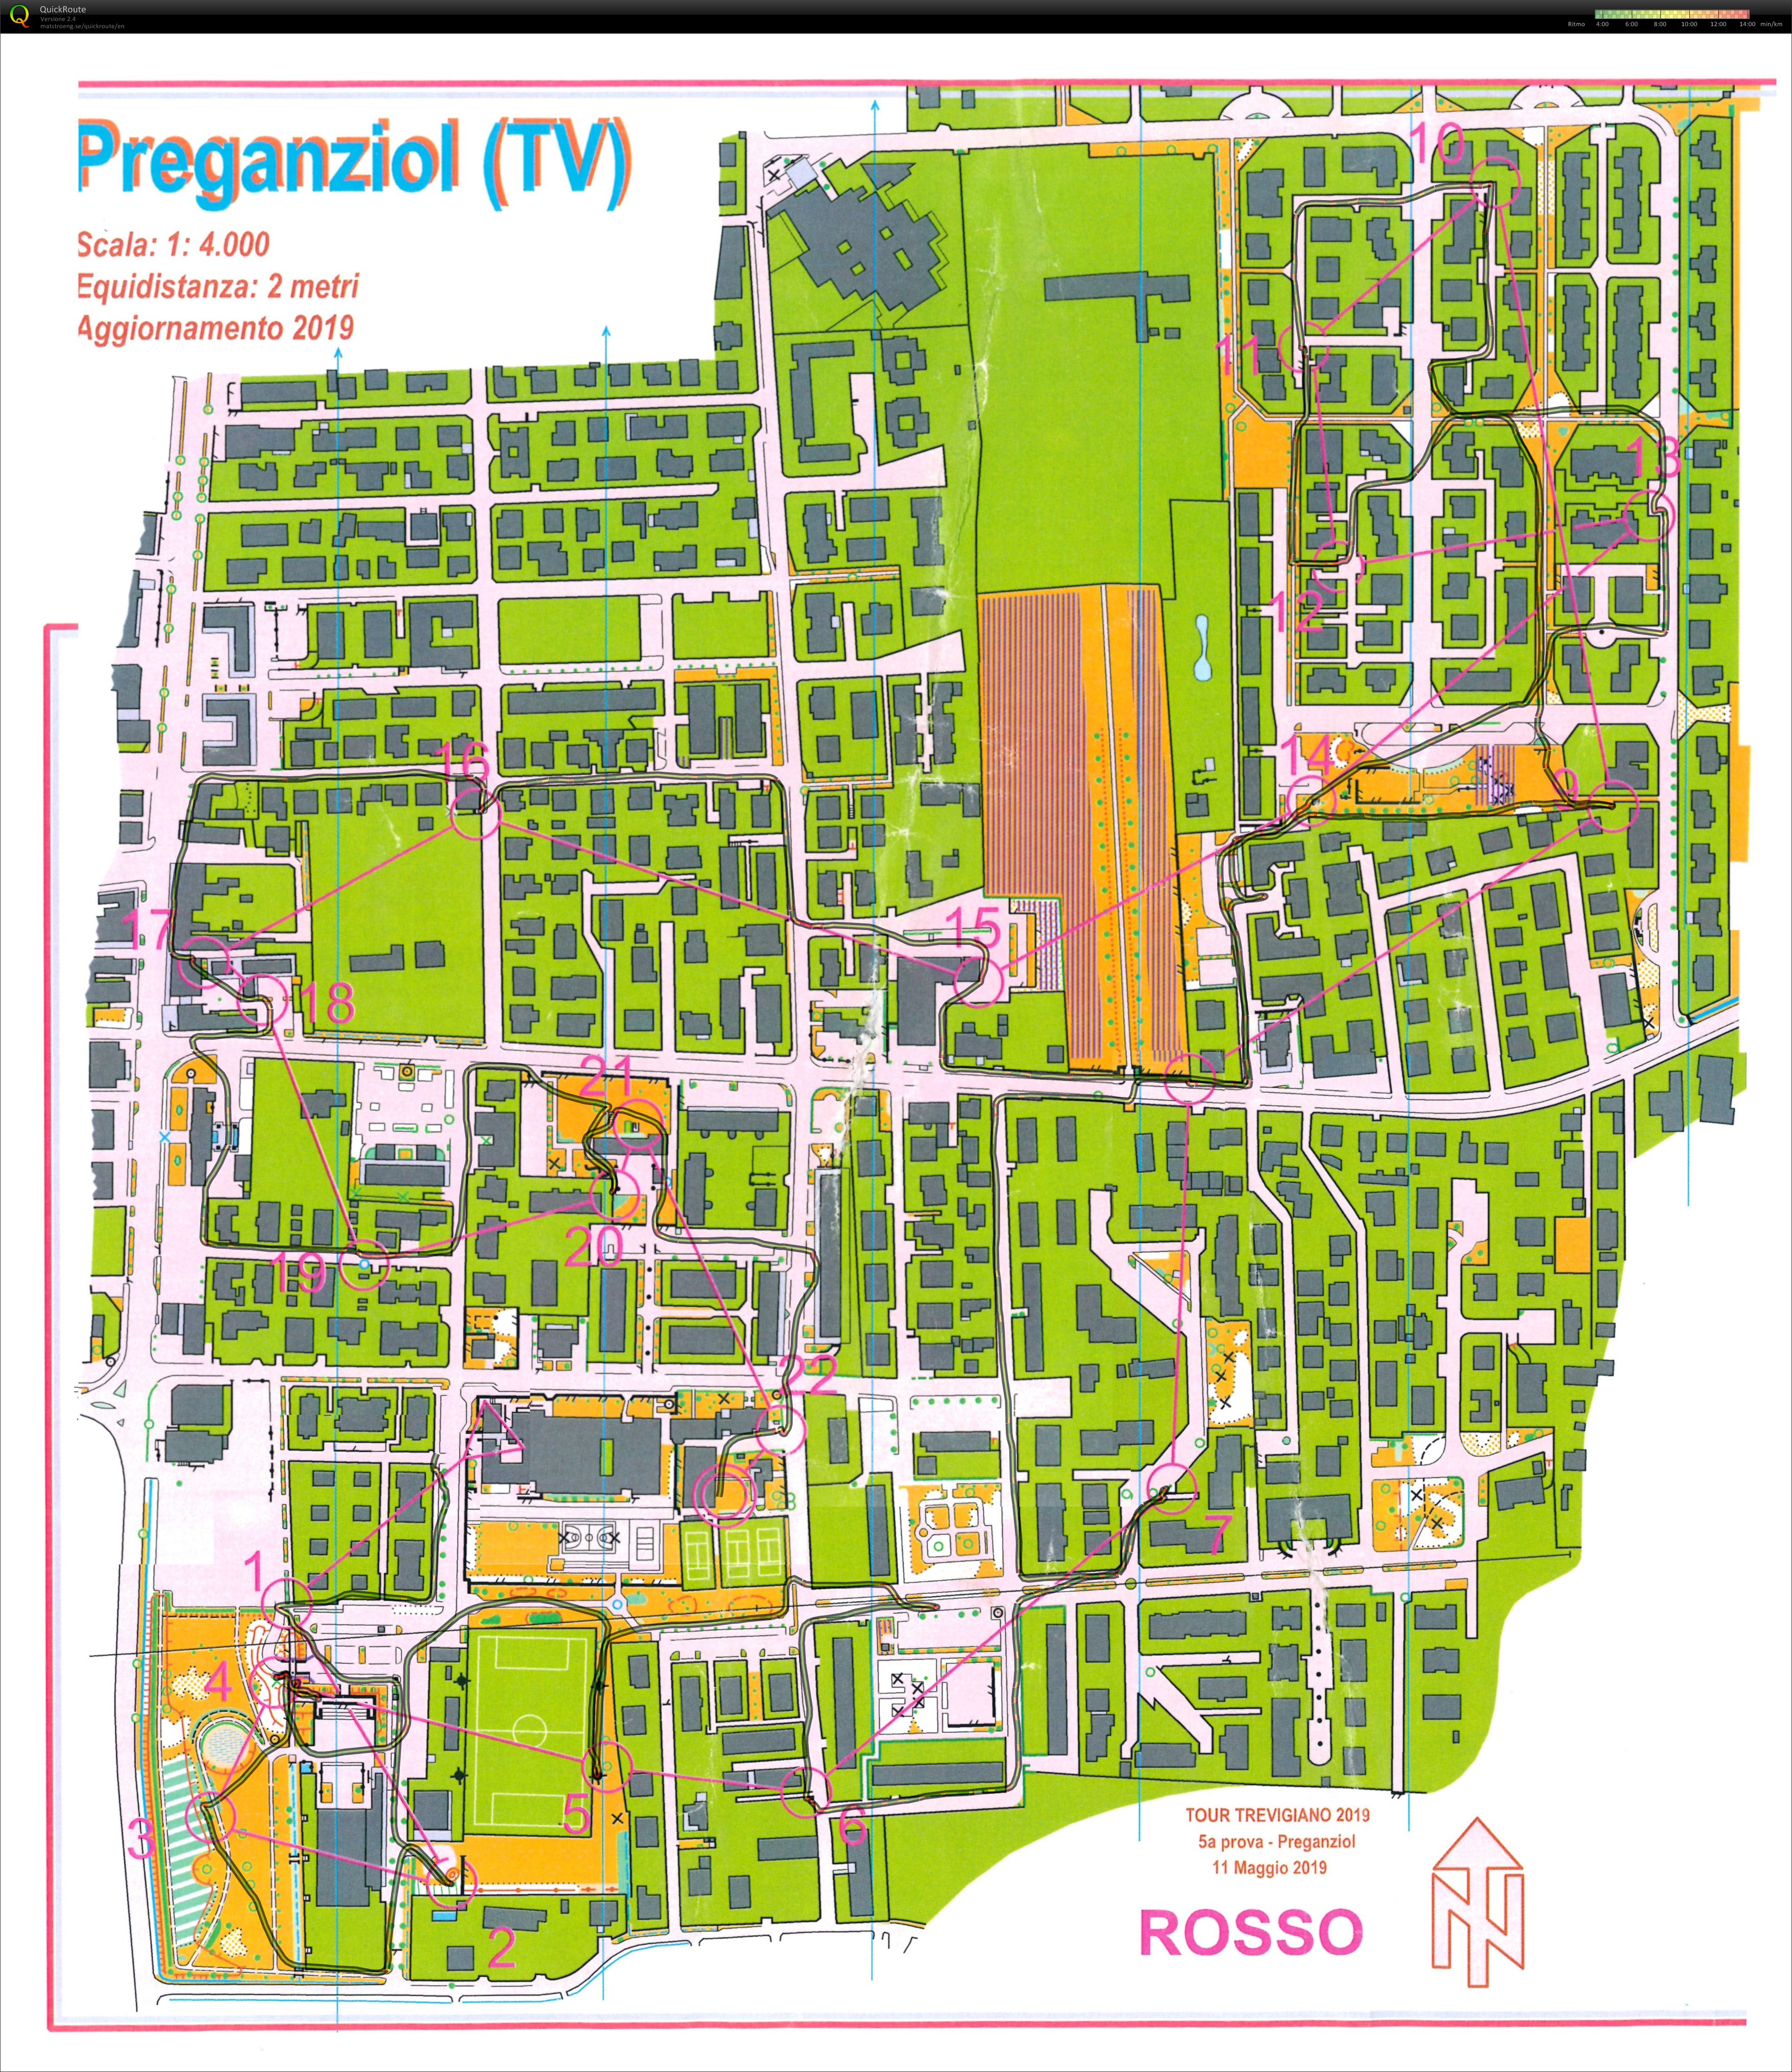 Preganziol - 5 prova o-tour Trevigiano 2019 (11-05-2019)